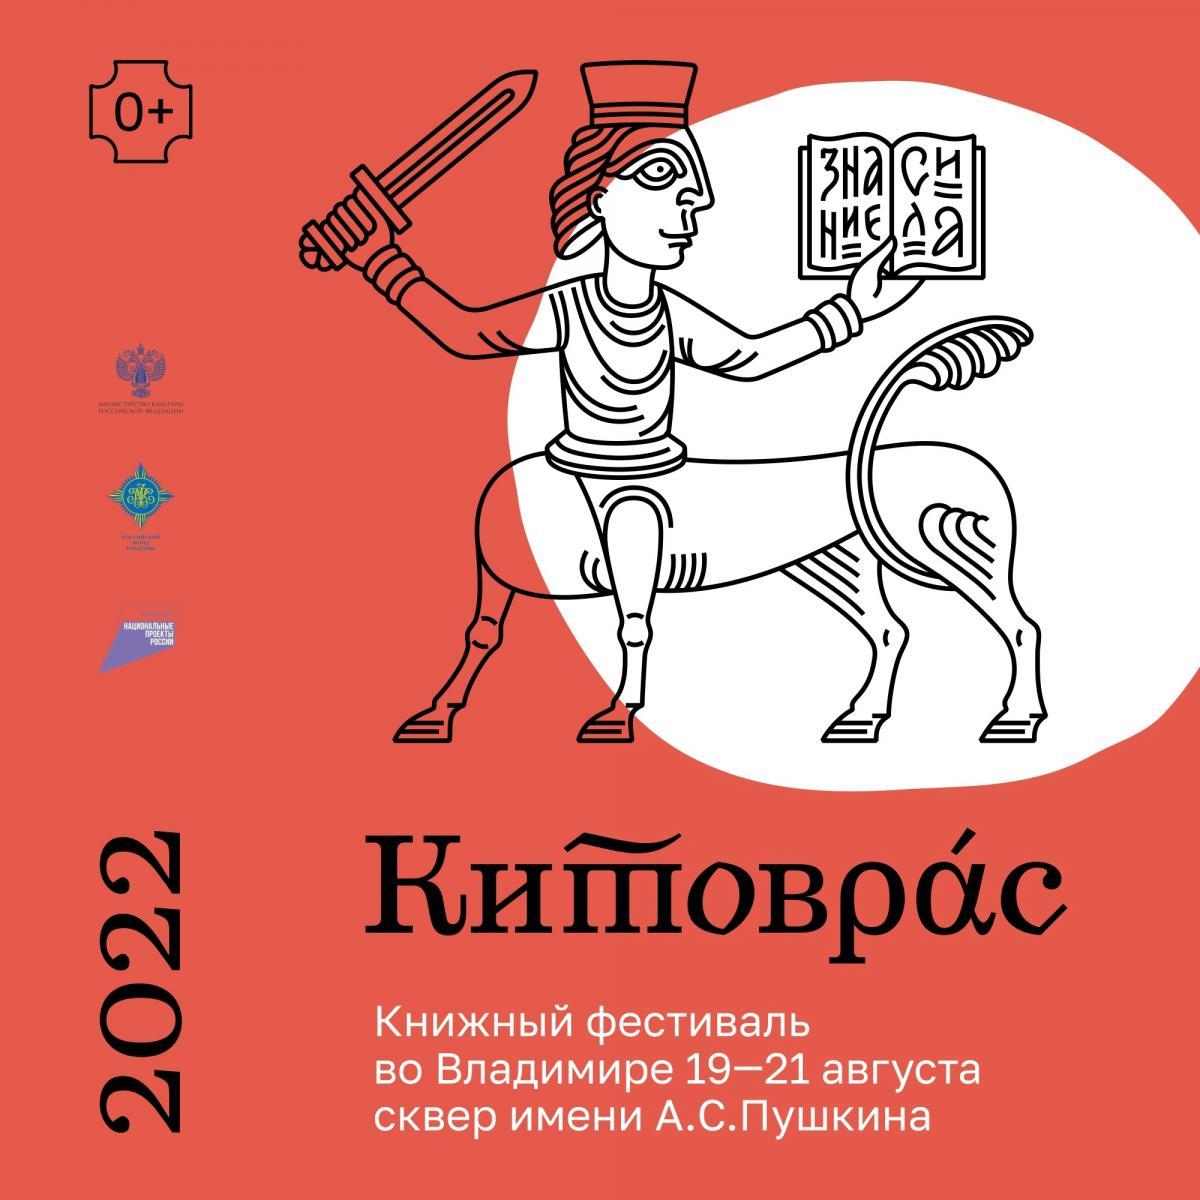 Опубликована полная программа книжного фестиваля «Китоврас»